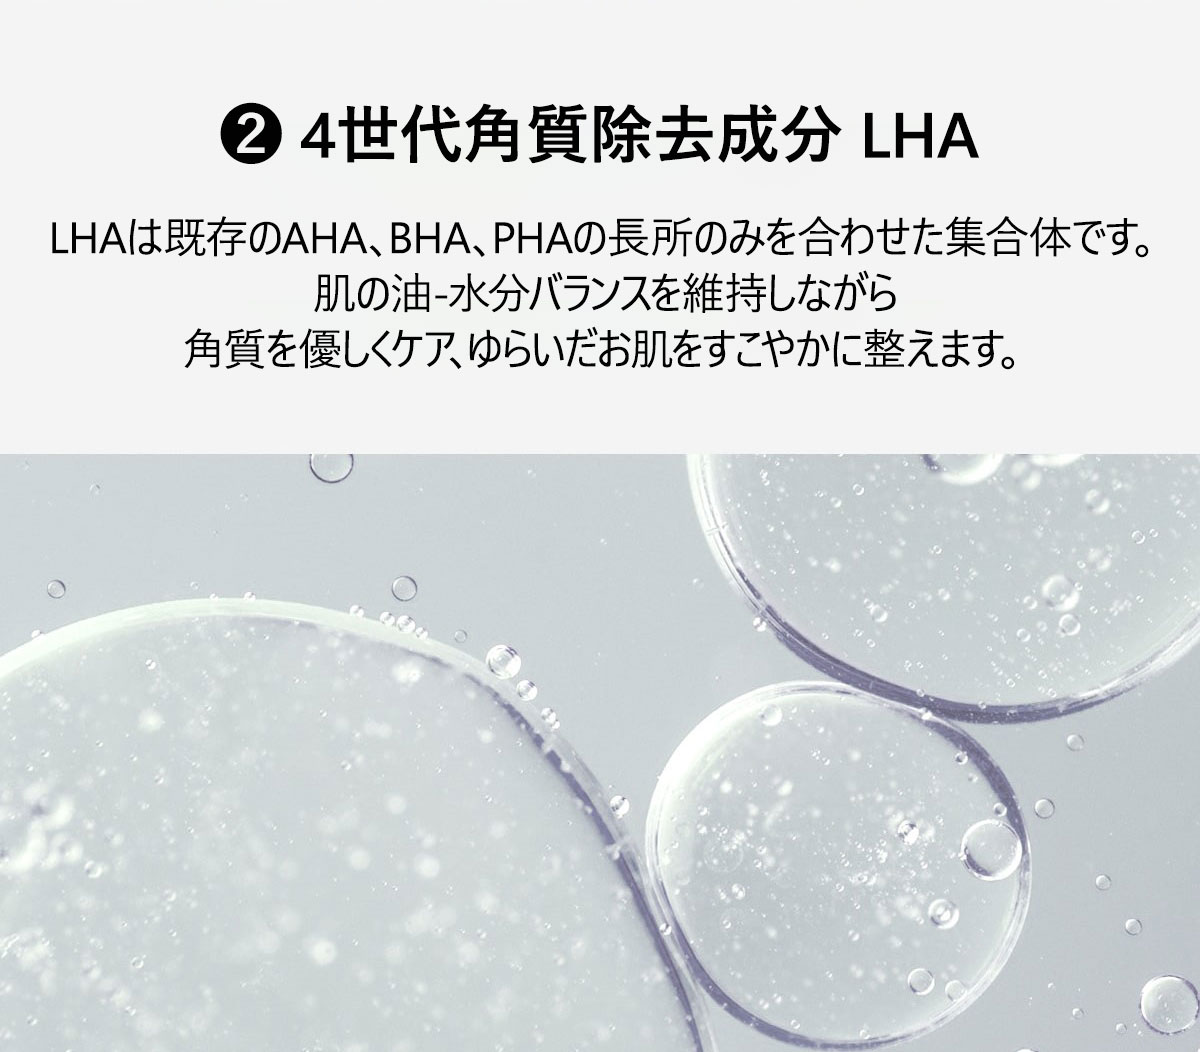 POINT3
②4世代角質除去成分 LHA
LHAは既存のAHA、BHA、PHAの長所のみを合わせた集合体です。
肌の油-水分バランスを維持しながら角質を優しくケア、ゆらいだお肌をすこやかに整えます。
